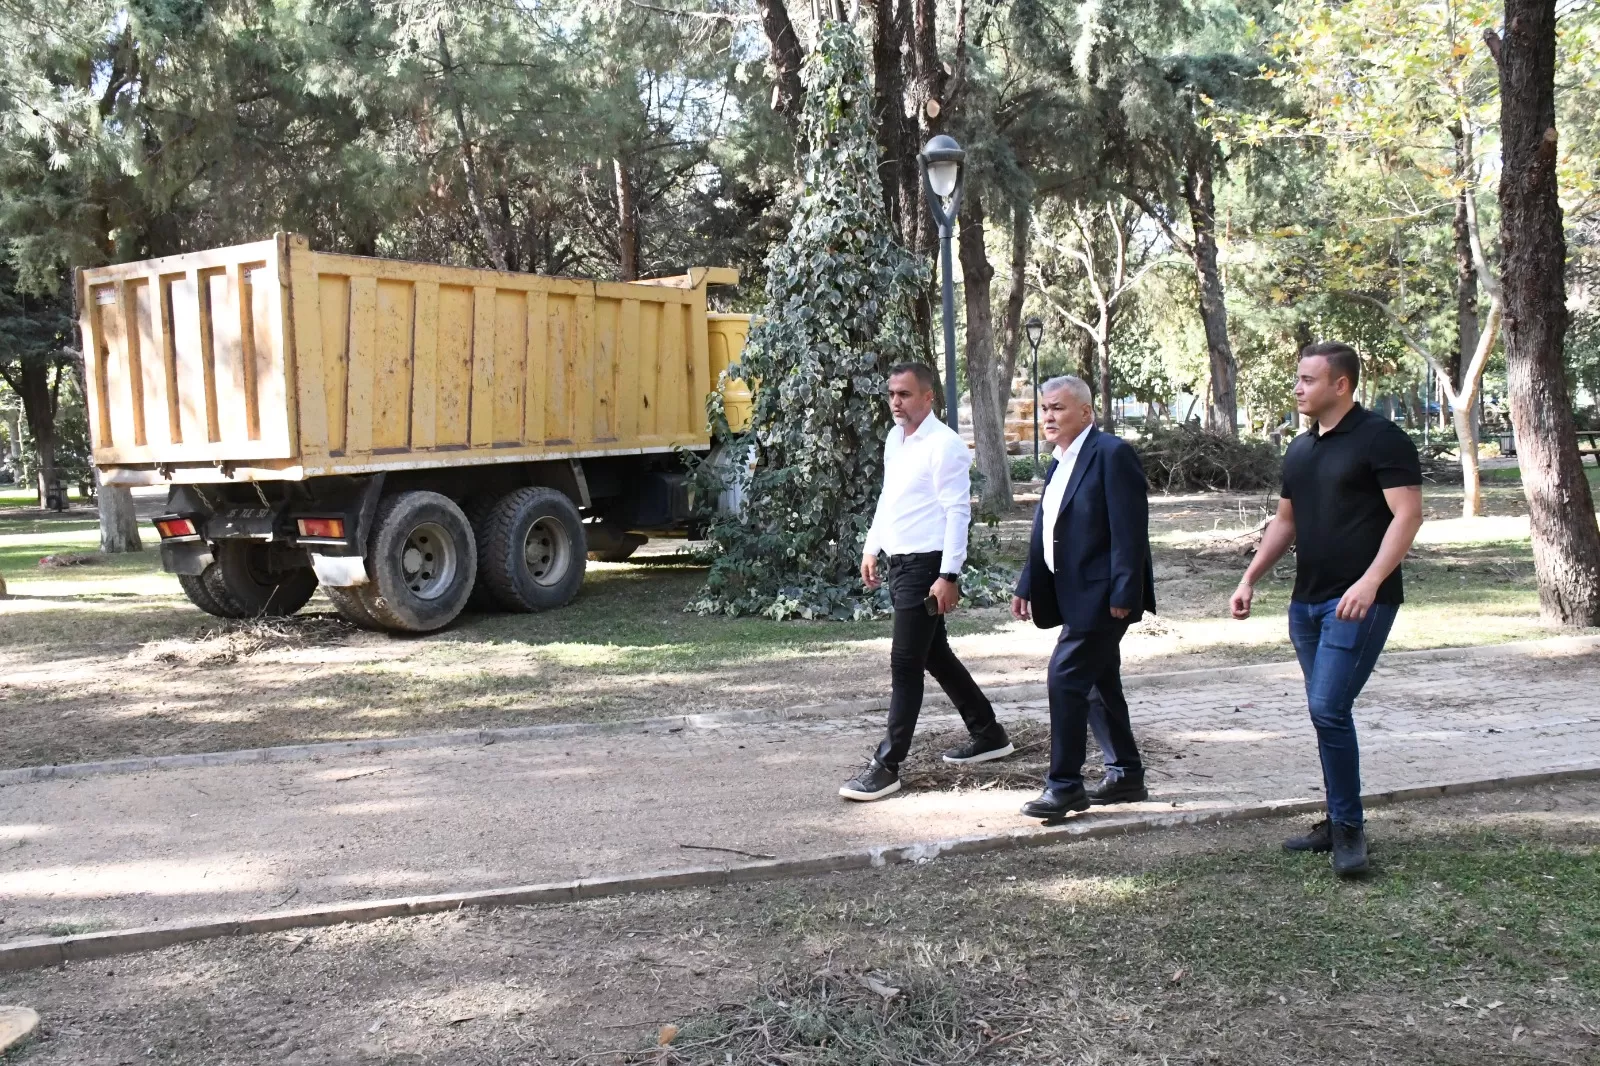 Torbalı Belediye Başkanı Mithat Tekin'in liderliğinde, Park ve Bahçeler Müdürlüğü, yeşil bir Torbalı için göz alıcı bir çalışma temposu sürdürüyor.